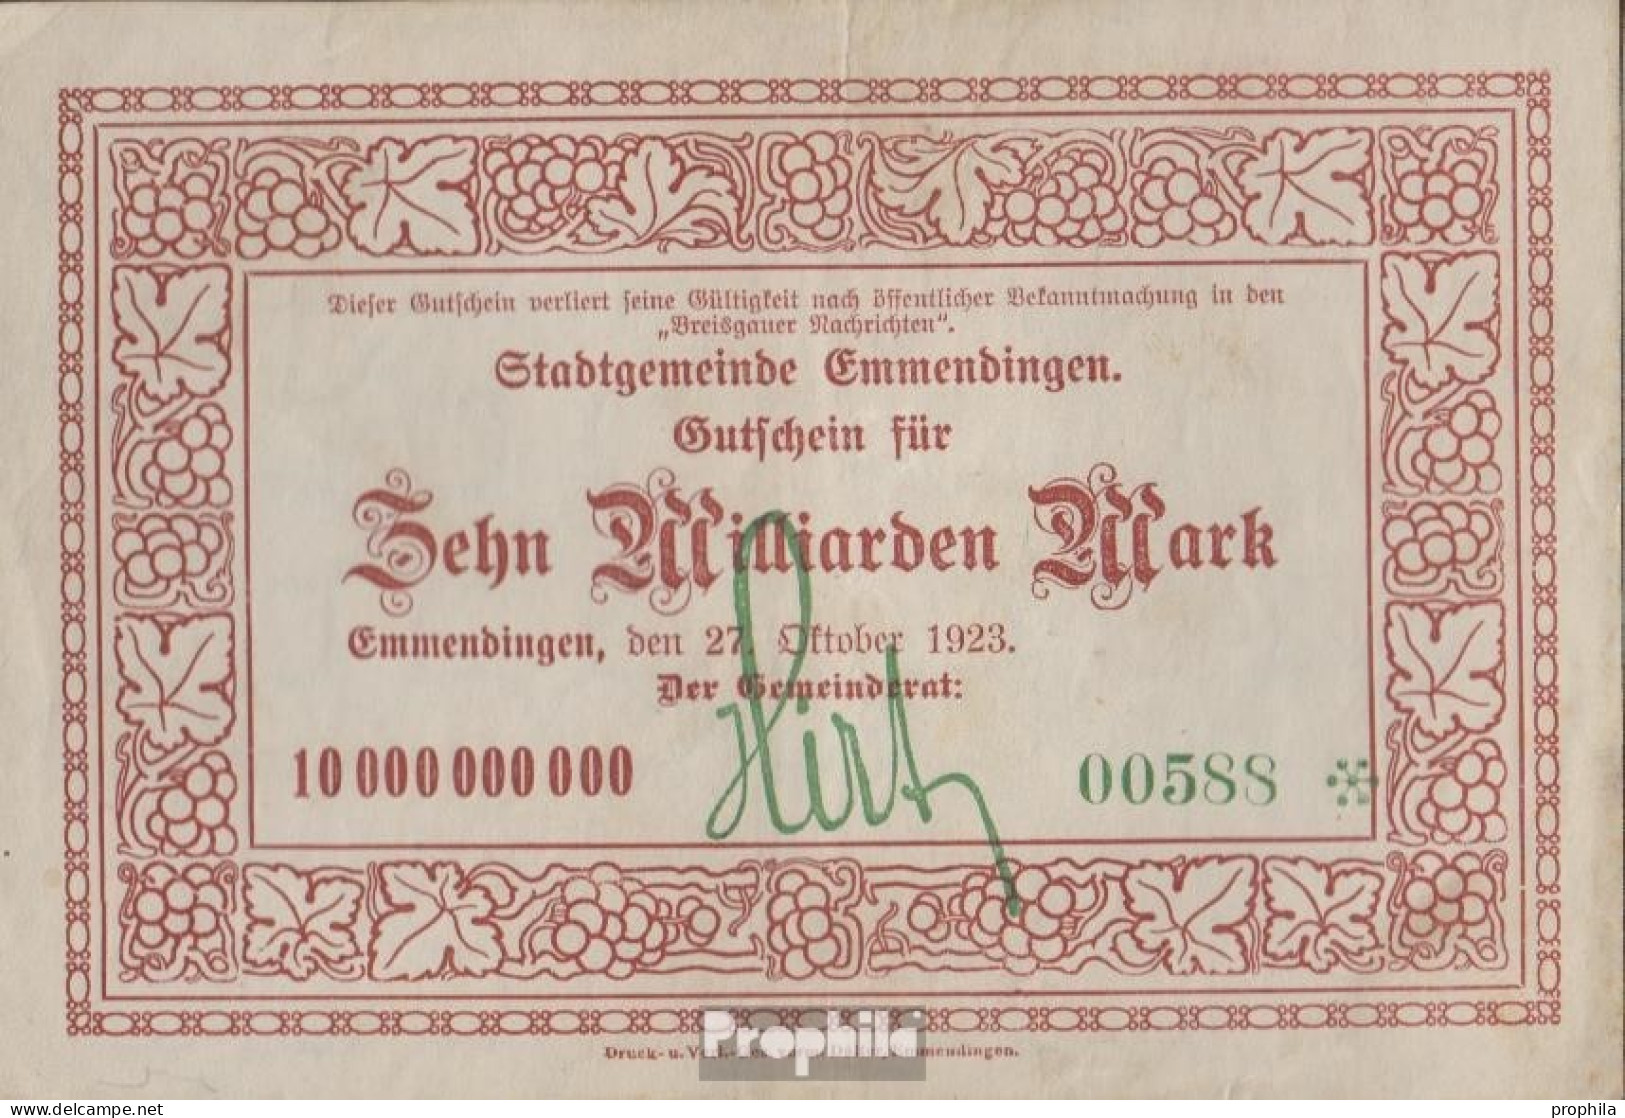 Emmendingen Inflationsgeld Stadt Emmendingen Gebraucht (III) 1923 10 Milliarden Mark - 10 Miljard Mark